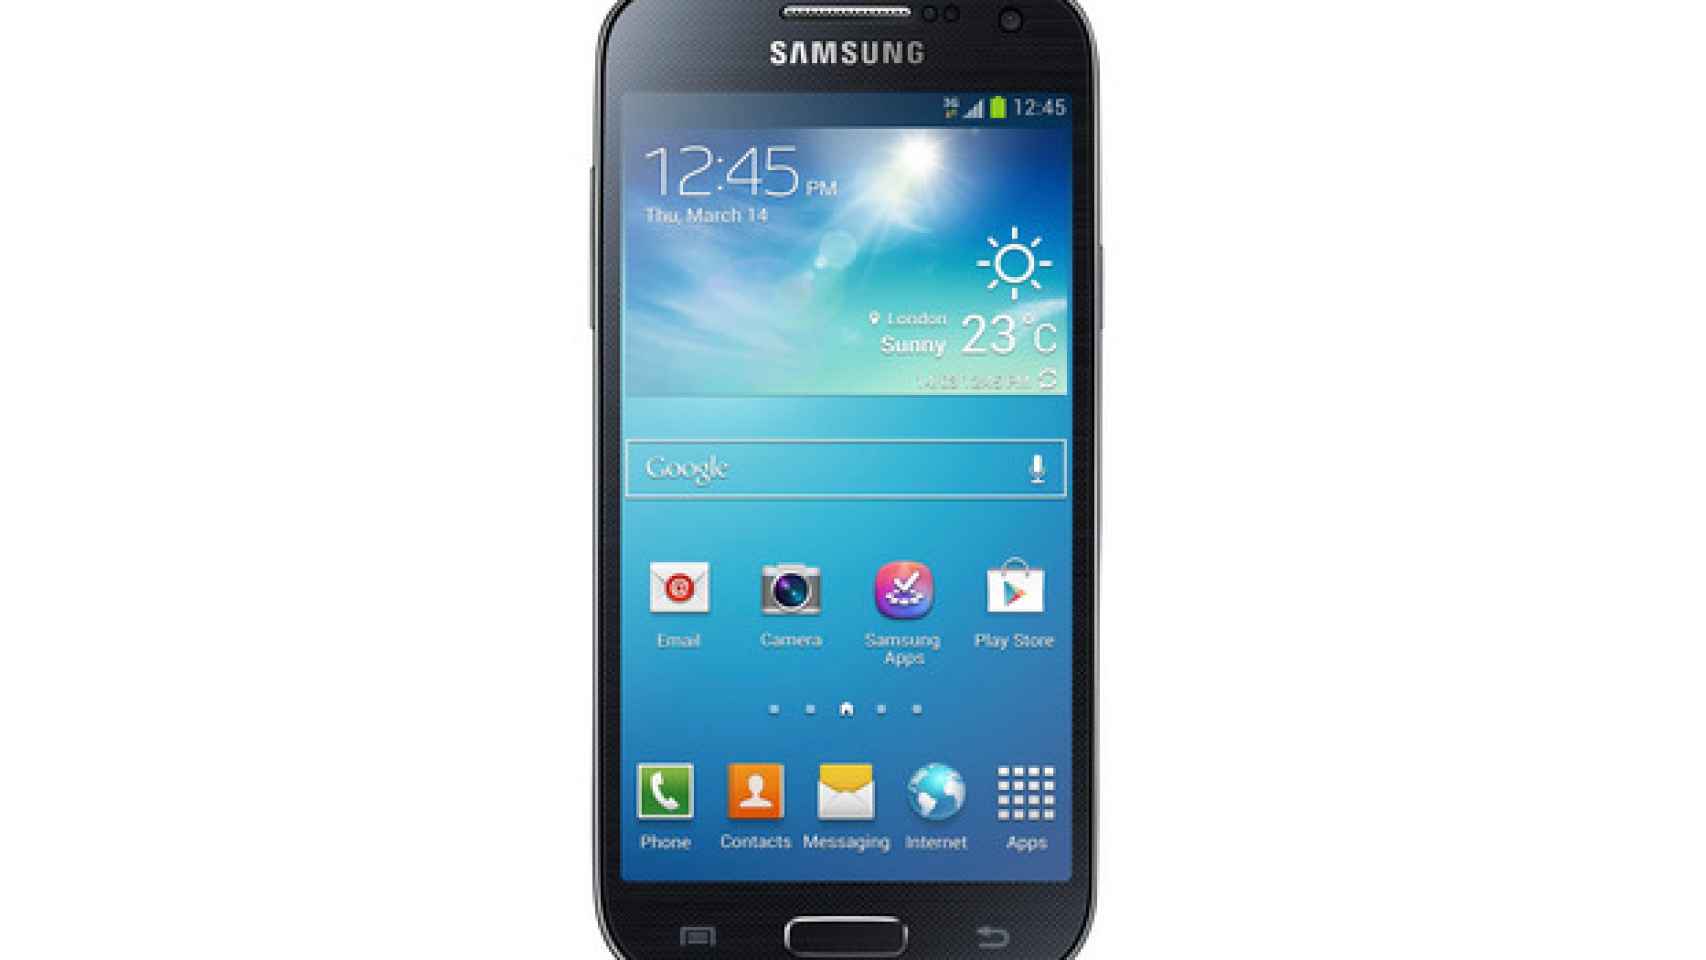 Samsung Galaxy S4 Mini: Características y presentación oficial